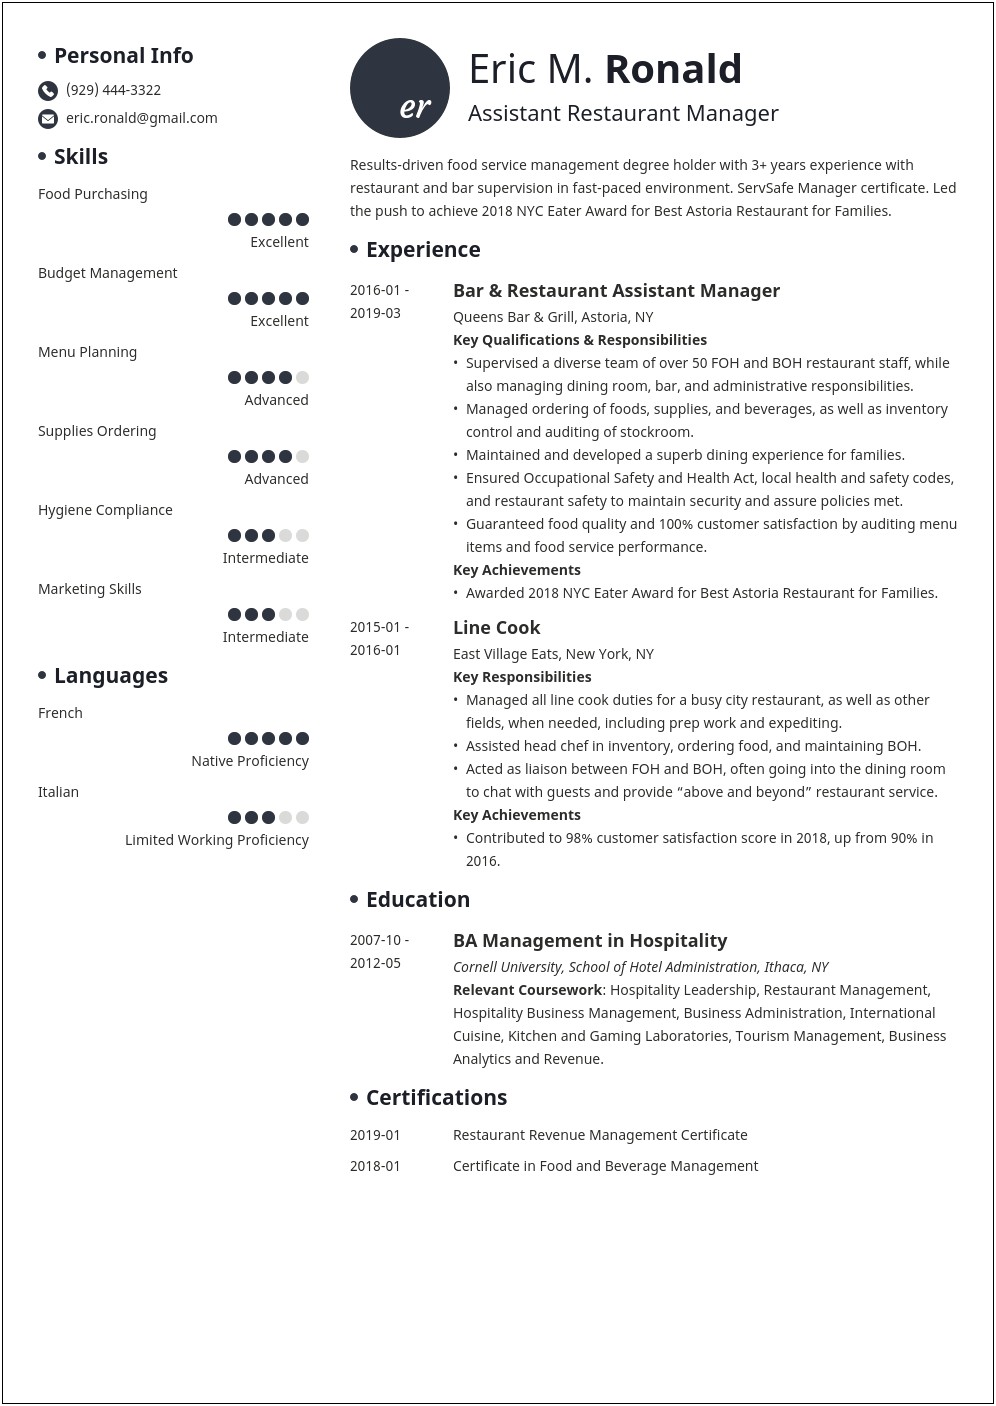 Restaraunt Manager Description For Resume